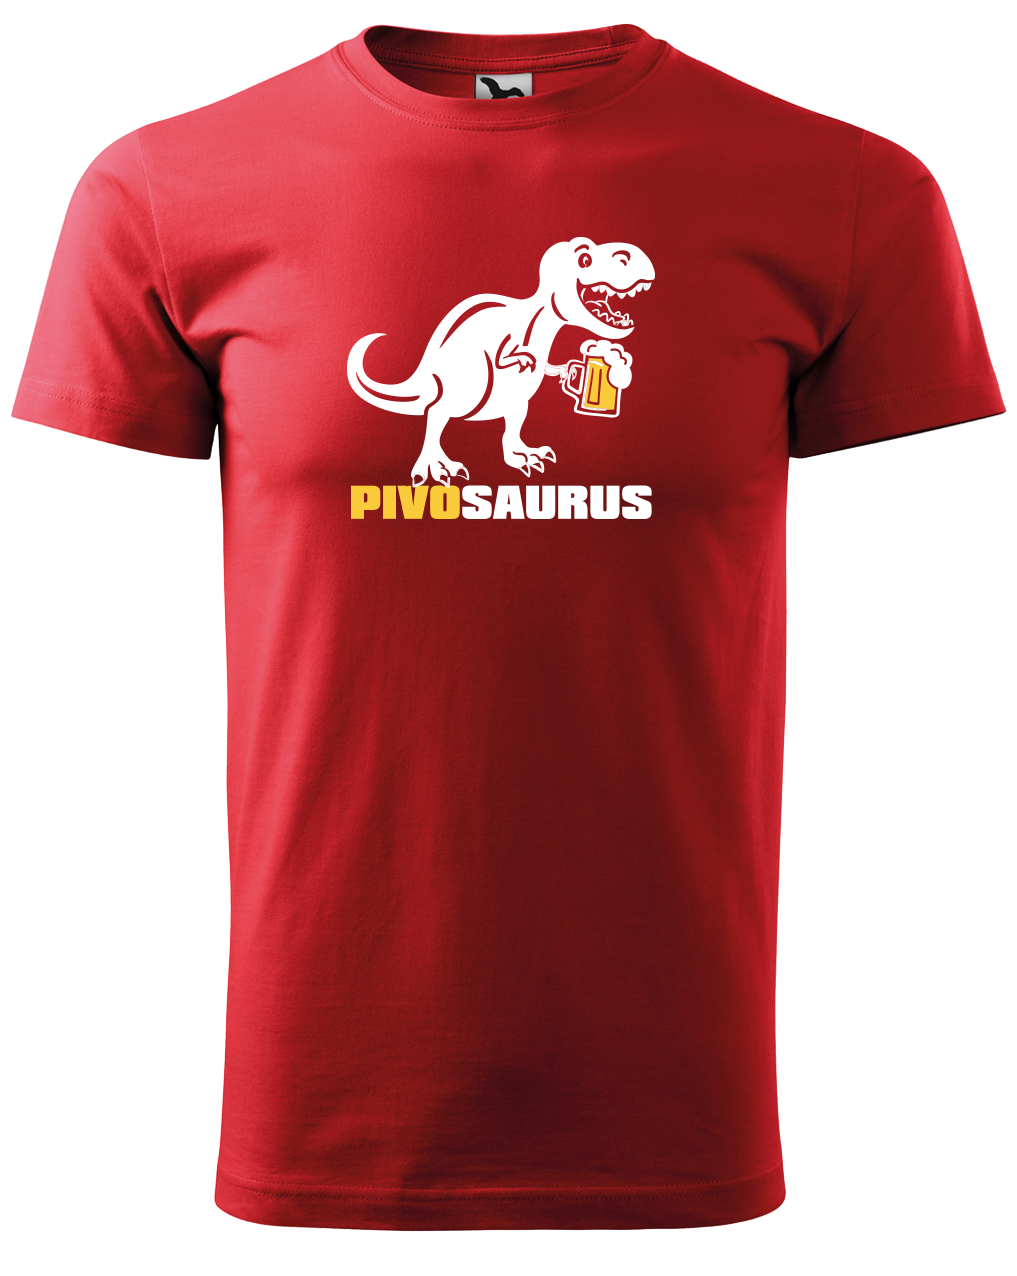 Vtipné tričko - Pivosaurus Velikost: M, Barva: Červená (07)